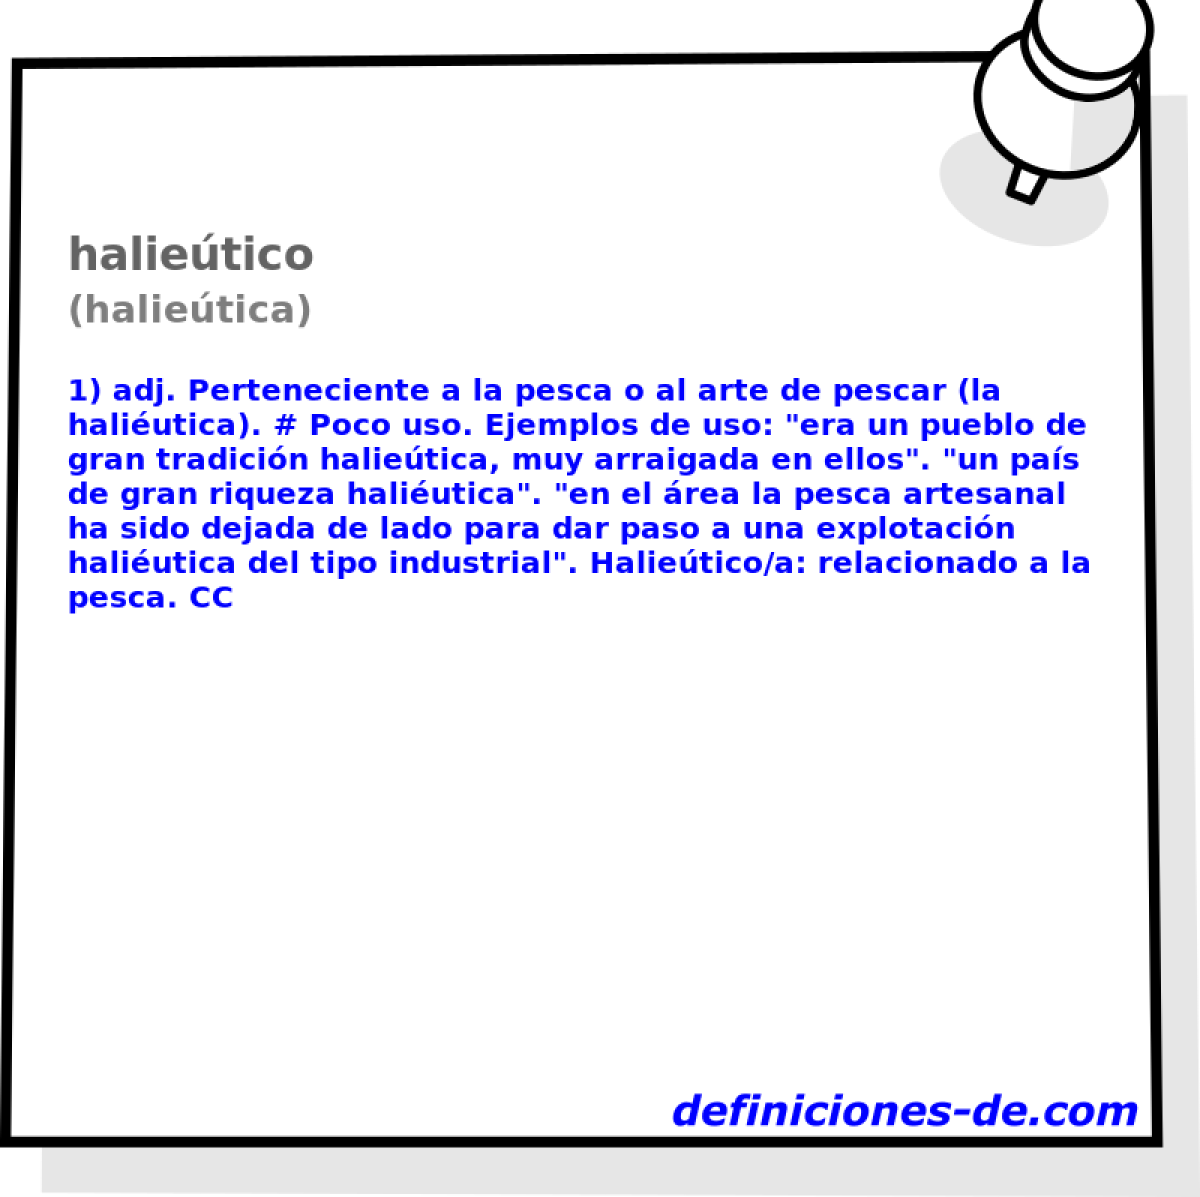 halietico (halietica)